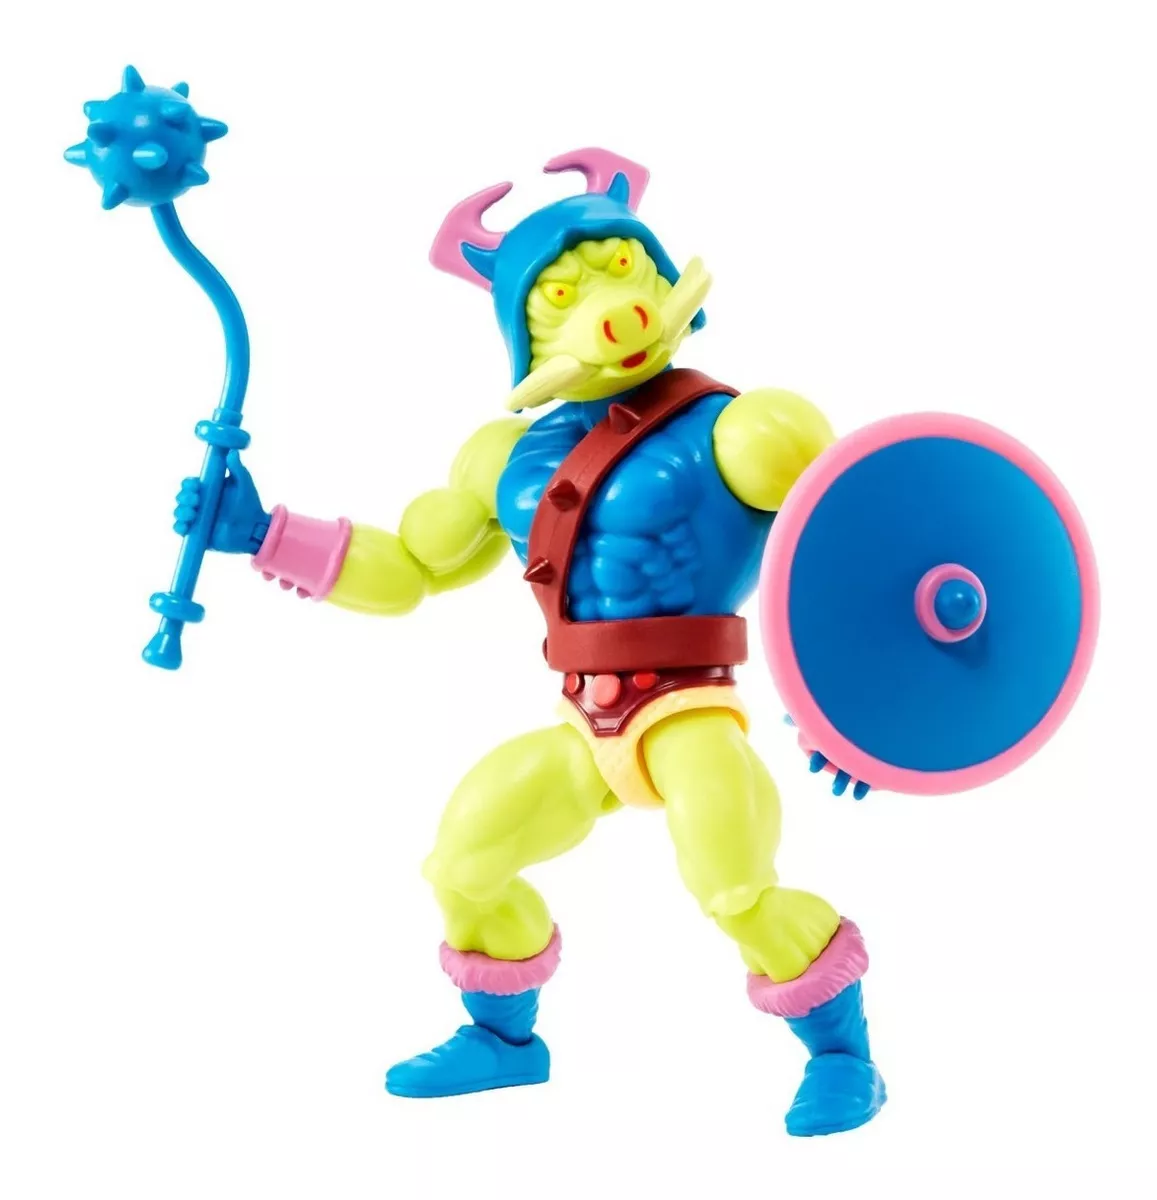 Boneco Pig-head Motu Coleção He-man Mattel Origins